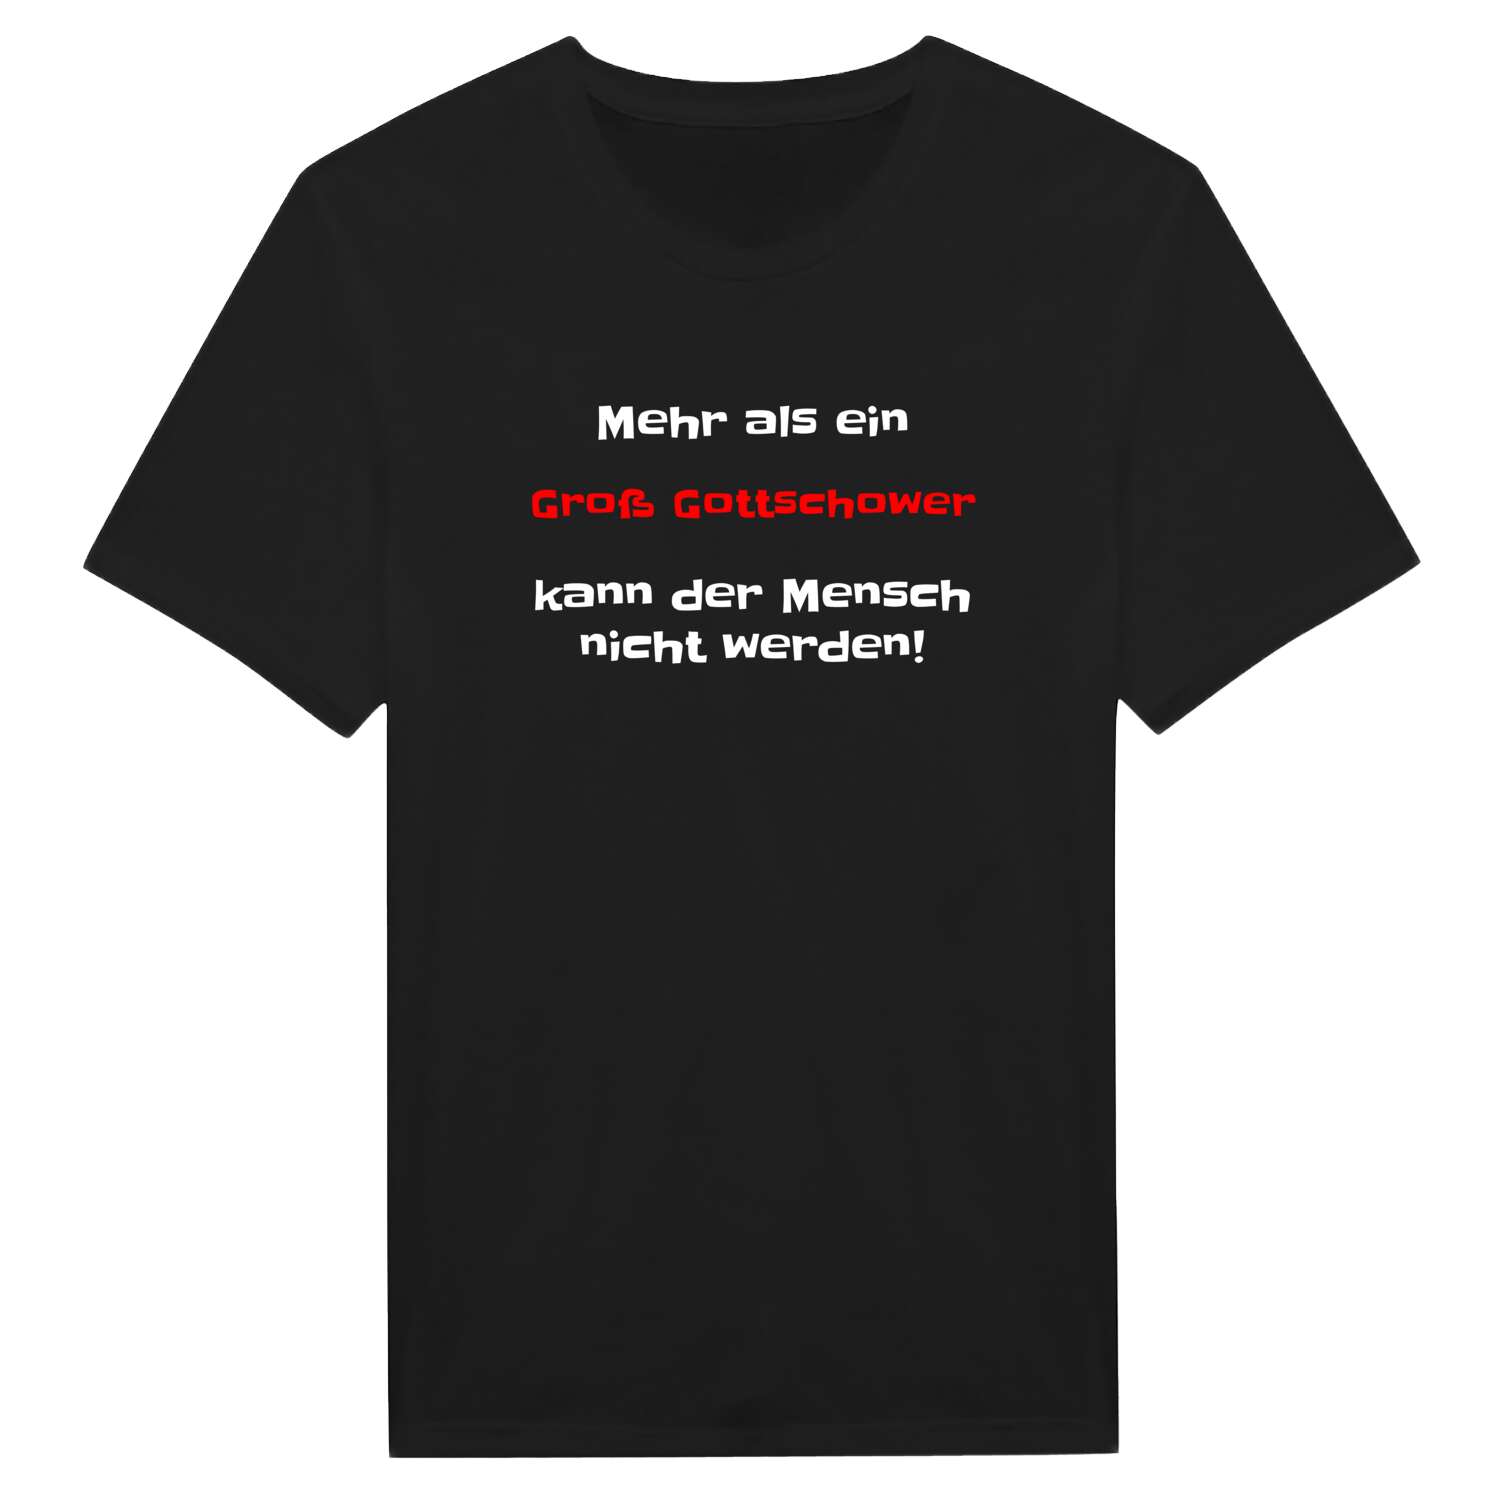 Groß Gottschow T-Shirt »Mehr als ein«